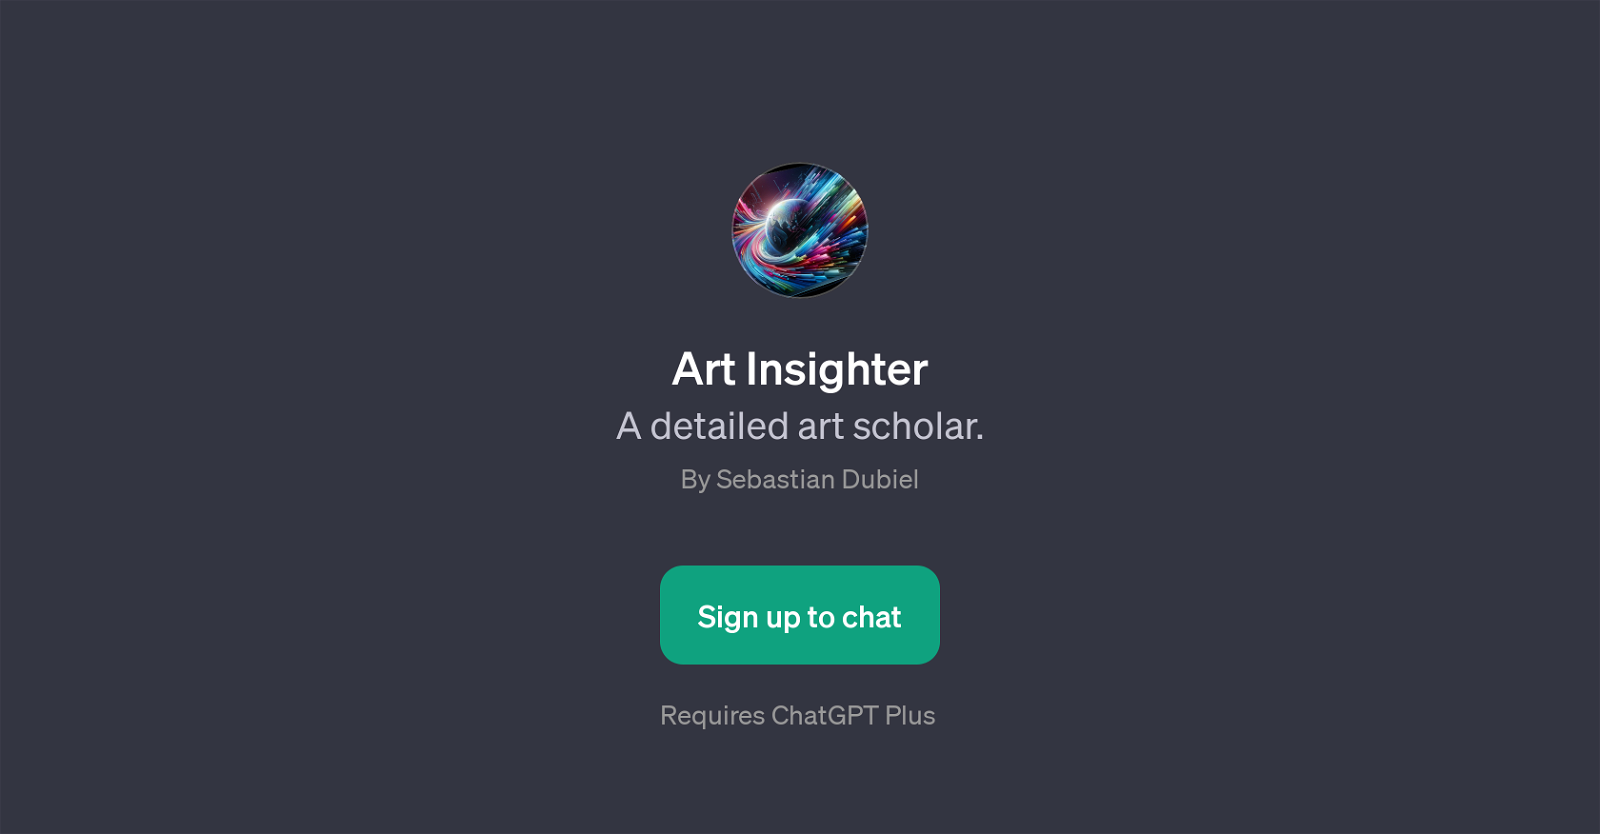 Art Insighter website